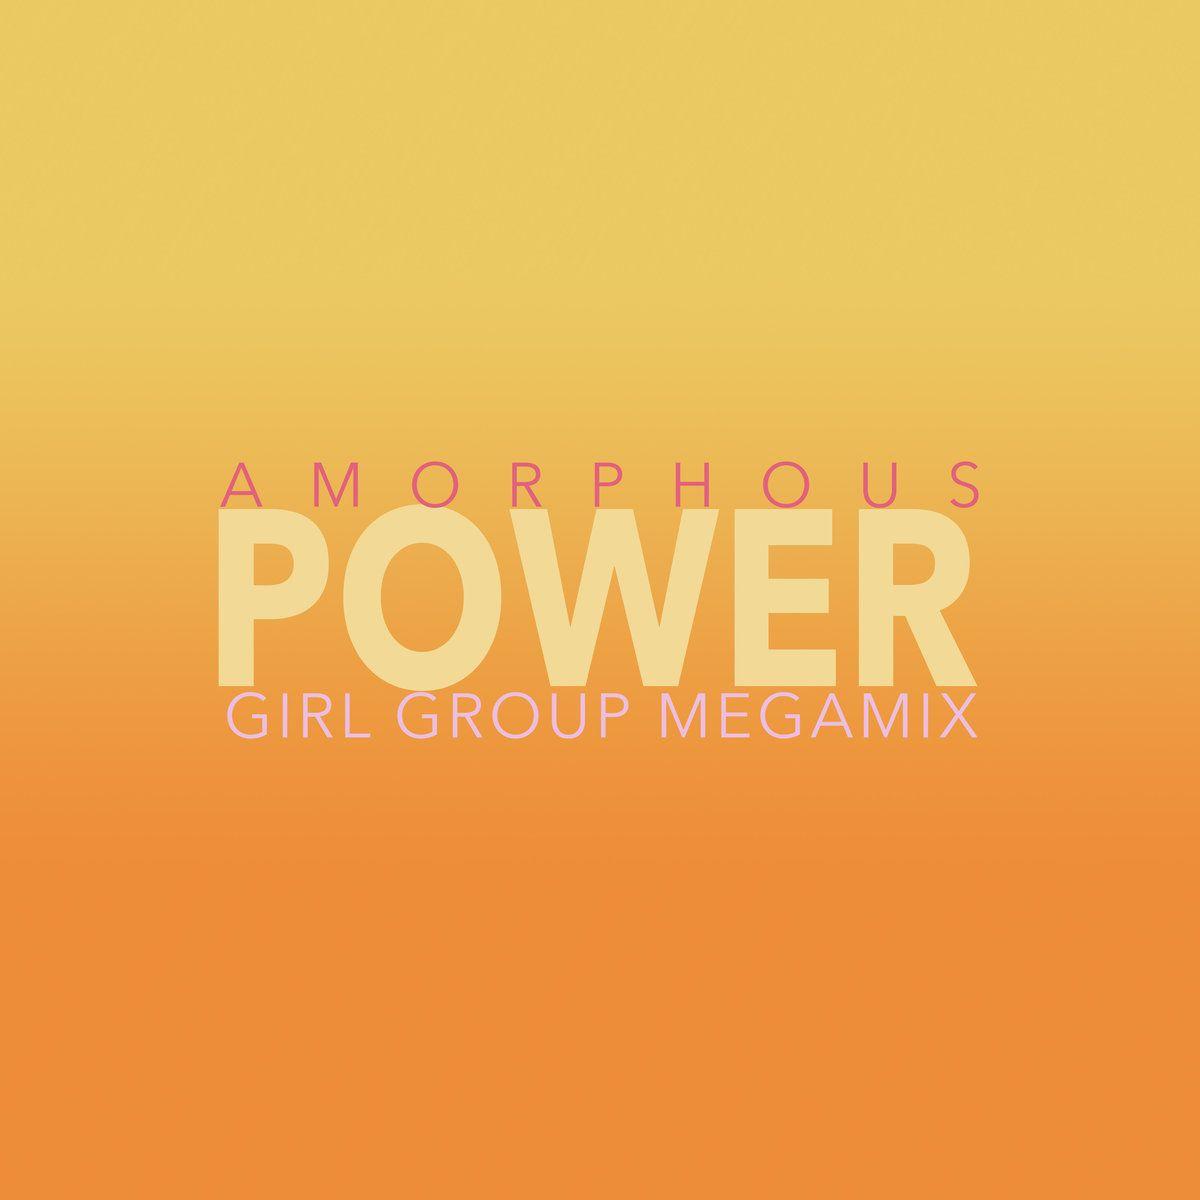 Power Girl Logo - POWER - Girl Group Megamix | amorphous